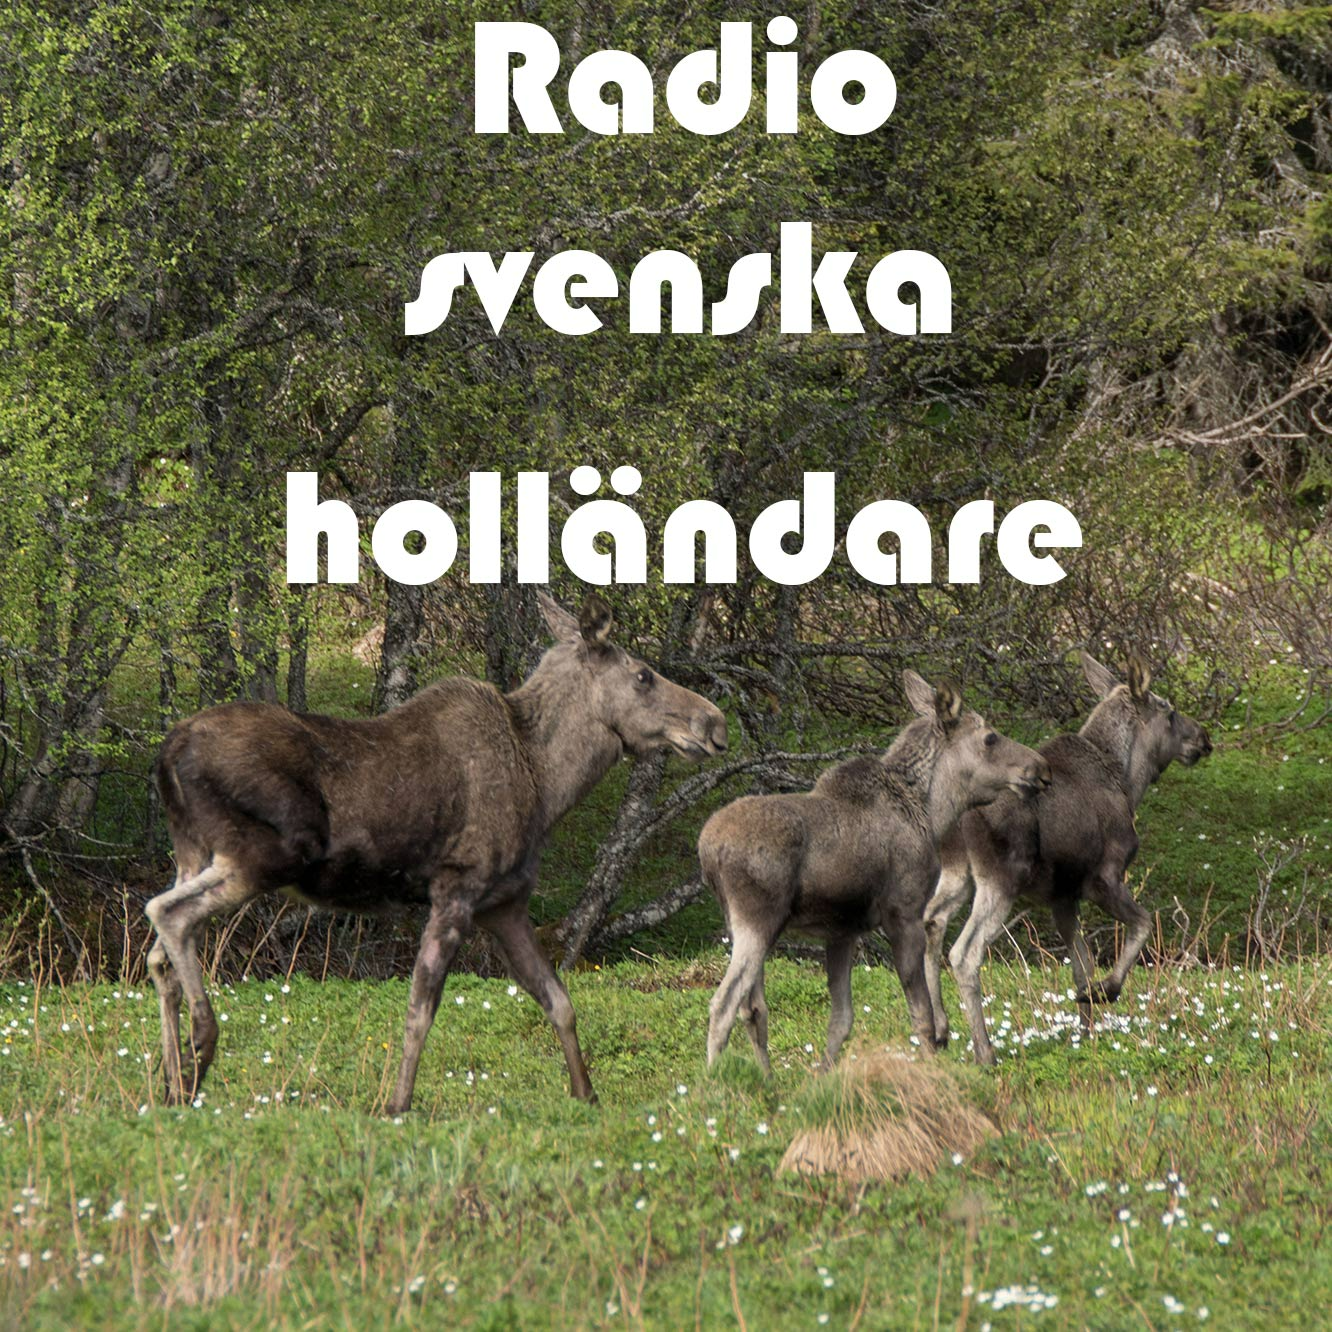 Radio svenska holländare